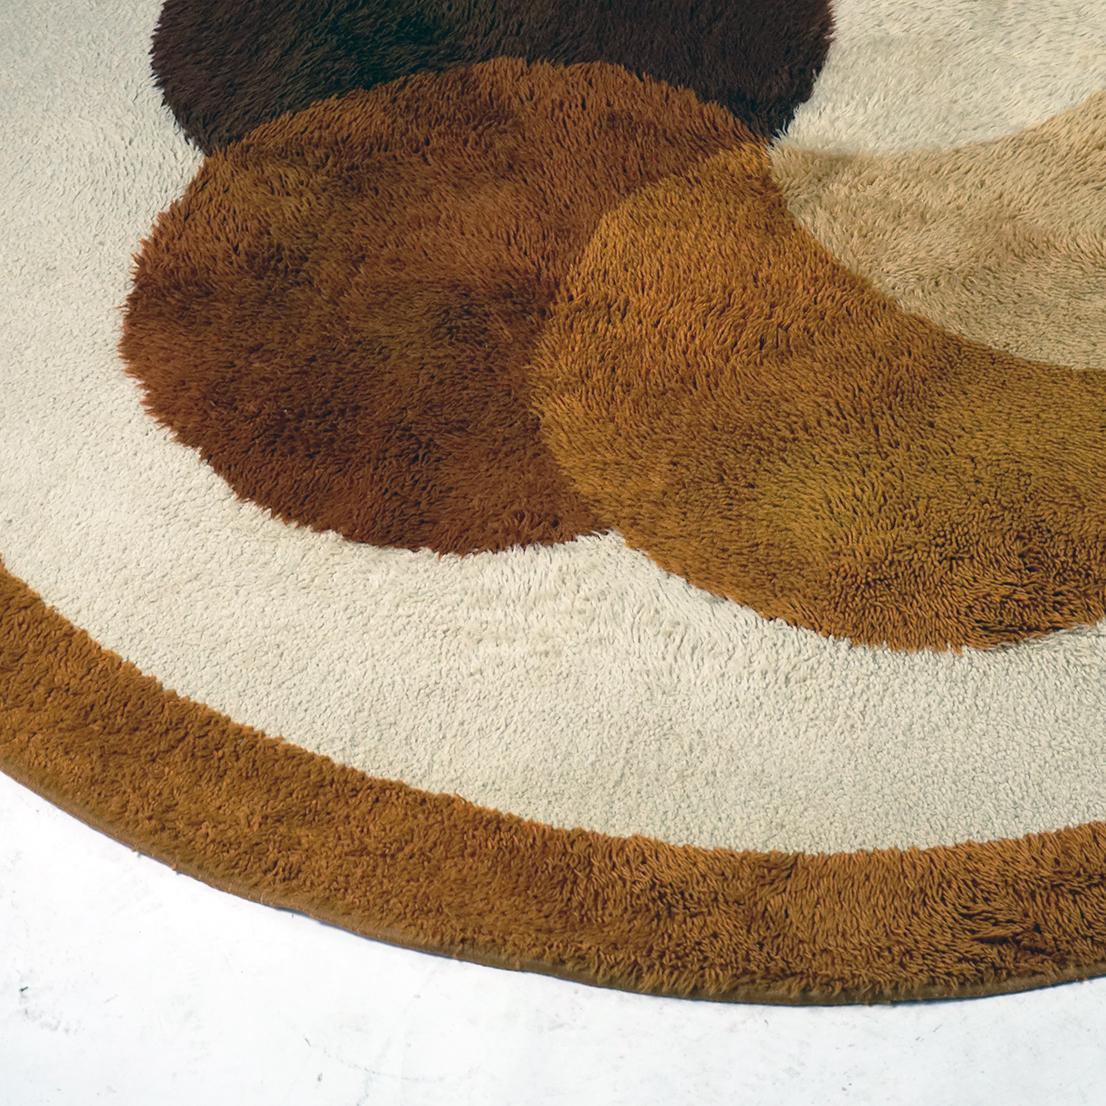 Dieser kreisförmige, braun-beige-gelbe Space Age Wollteppich wurde in den 1970er Jahren von Desso in den Niederlanden entworfen und hergestellt.
Charmante Farben und sehr dekoratives Blumenmuster Teppich in sehr gutem Originalzustand ohne Schäden.